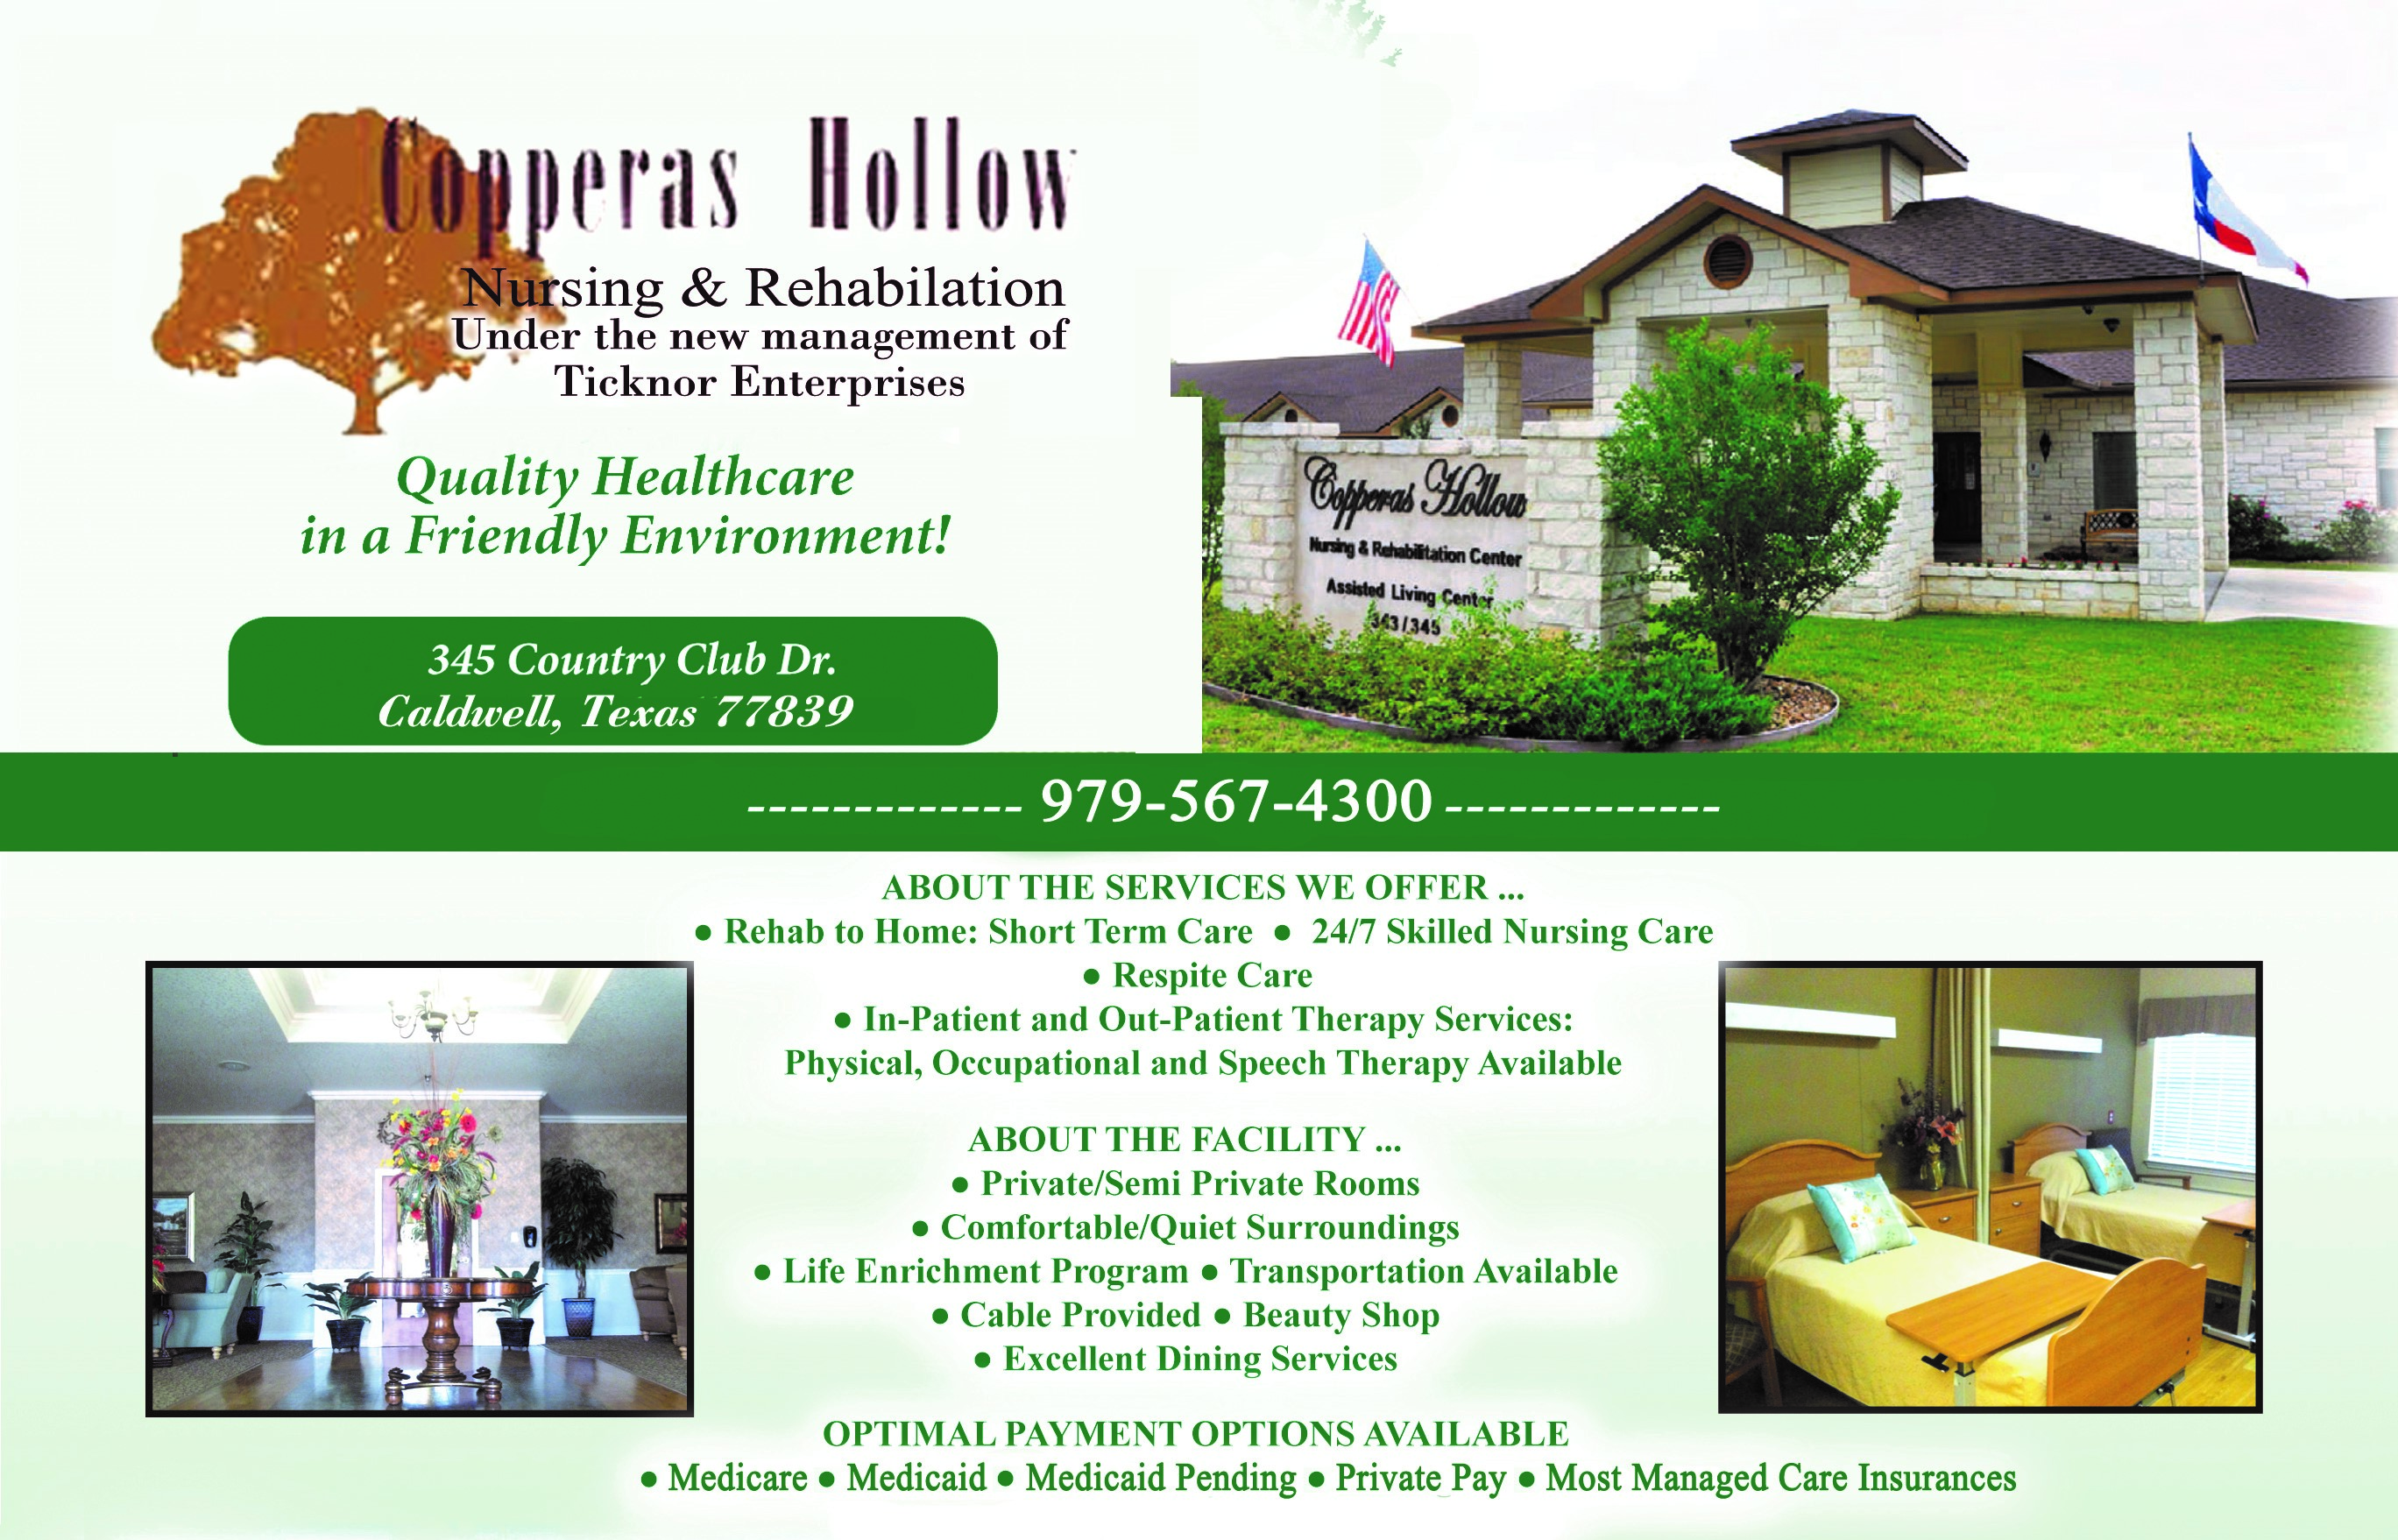 Copperas Hollow Nursing and Rehabilitation